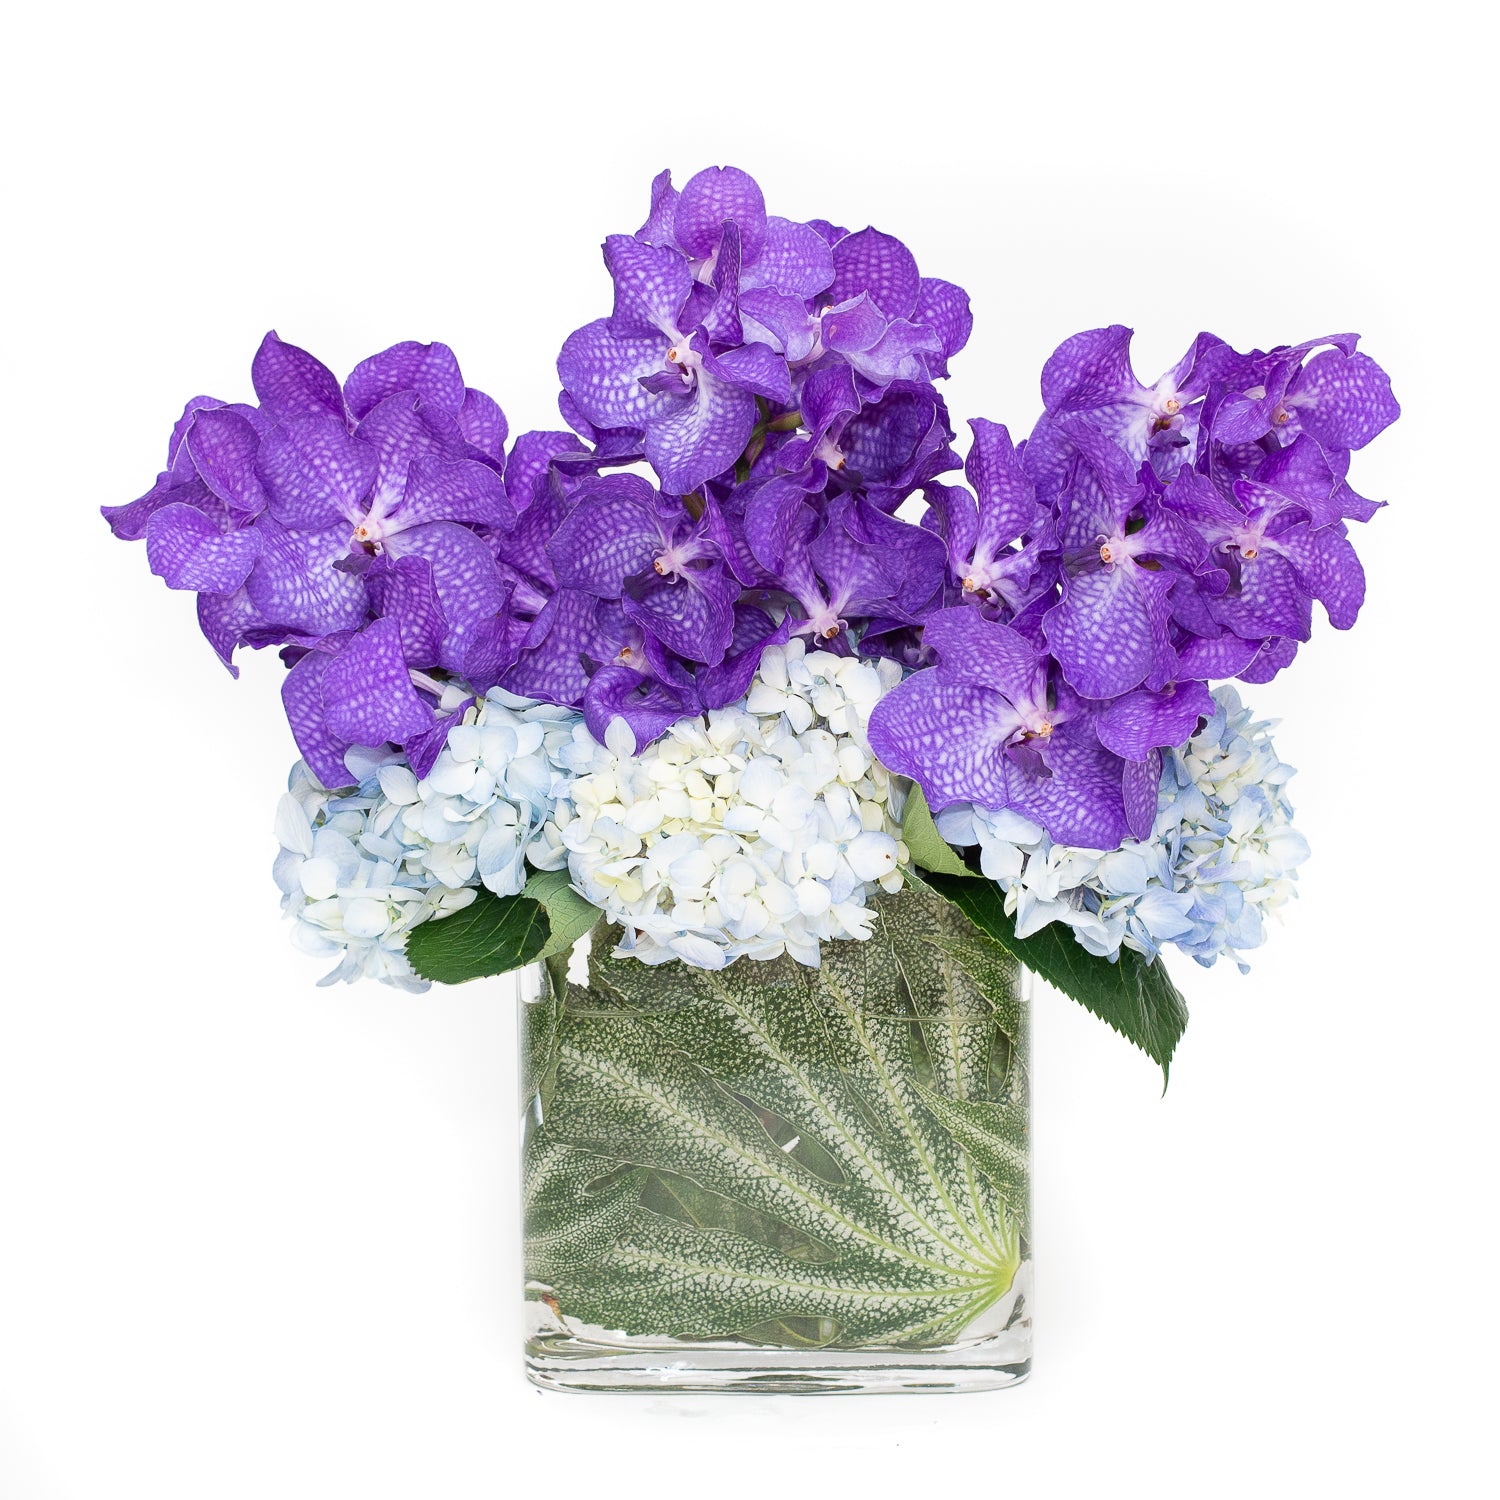 Yenifer – Flores Mantilla: Floral Design & Gifts